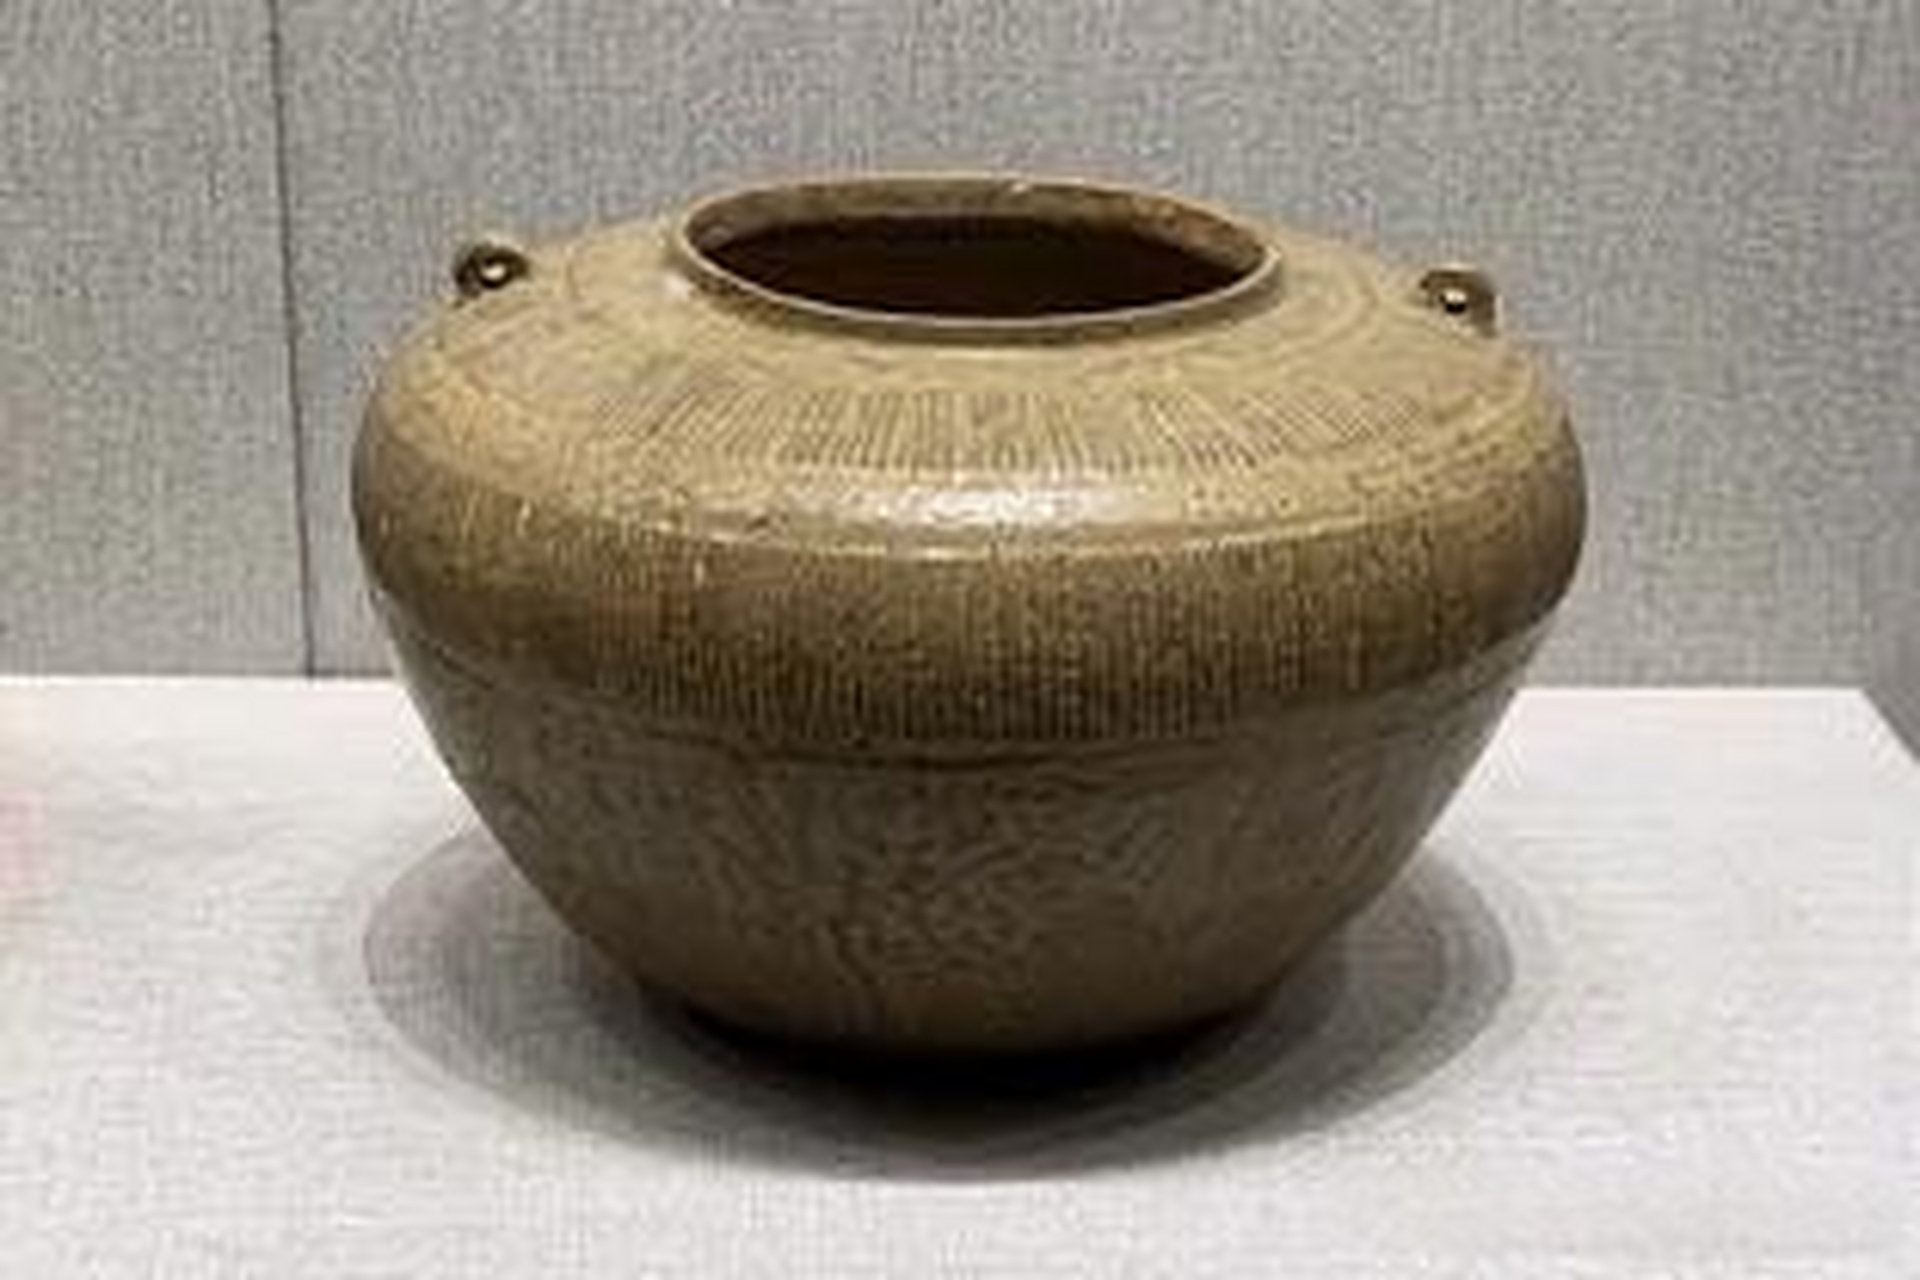 《故宫陶瓷馆:原始青瓷在战国时期就已初具规模了》原始青瓷出现于约